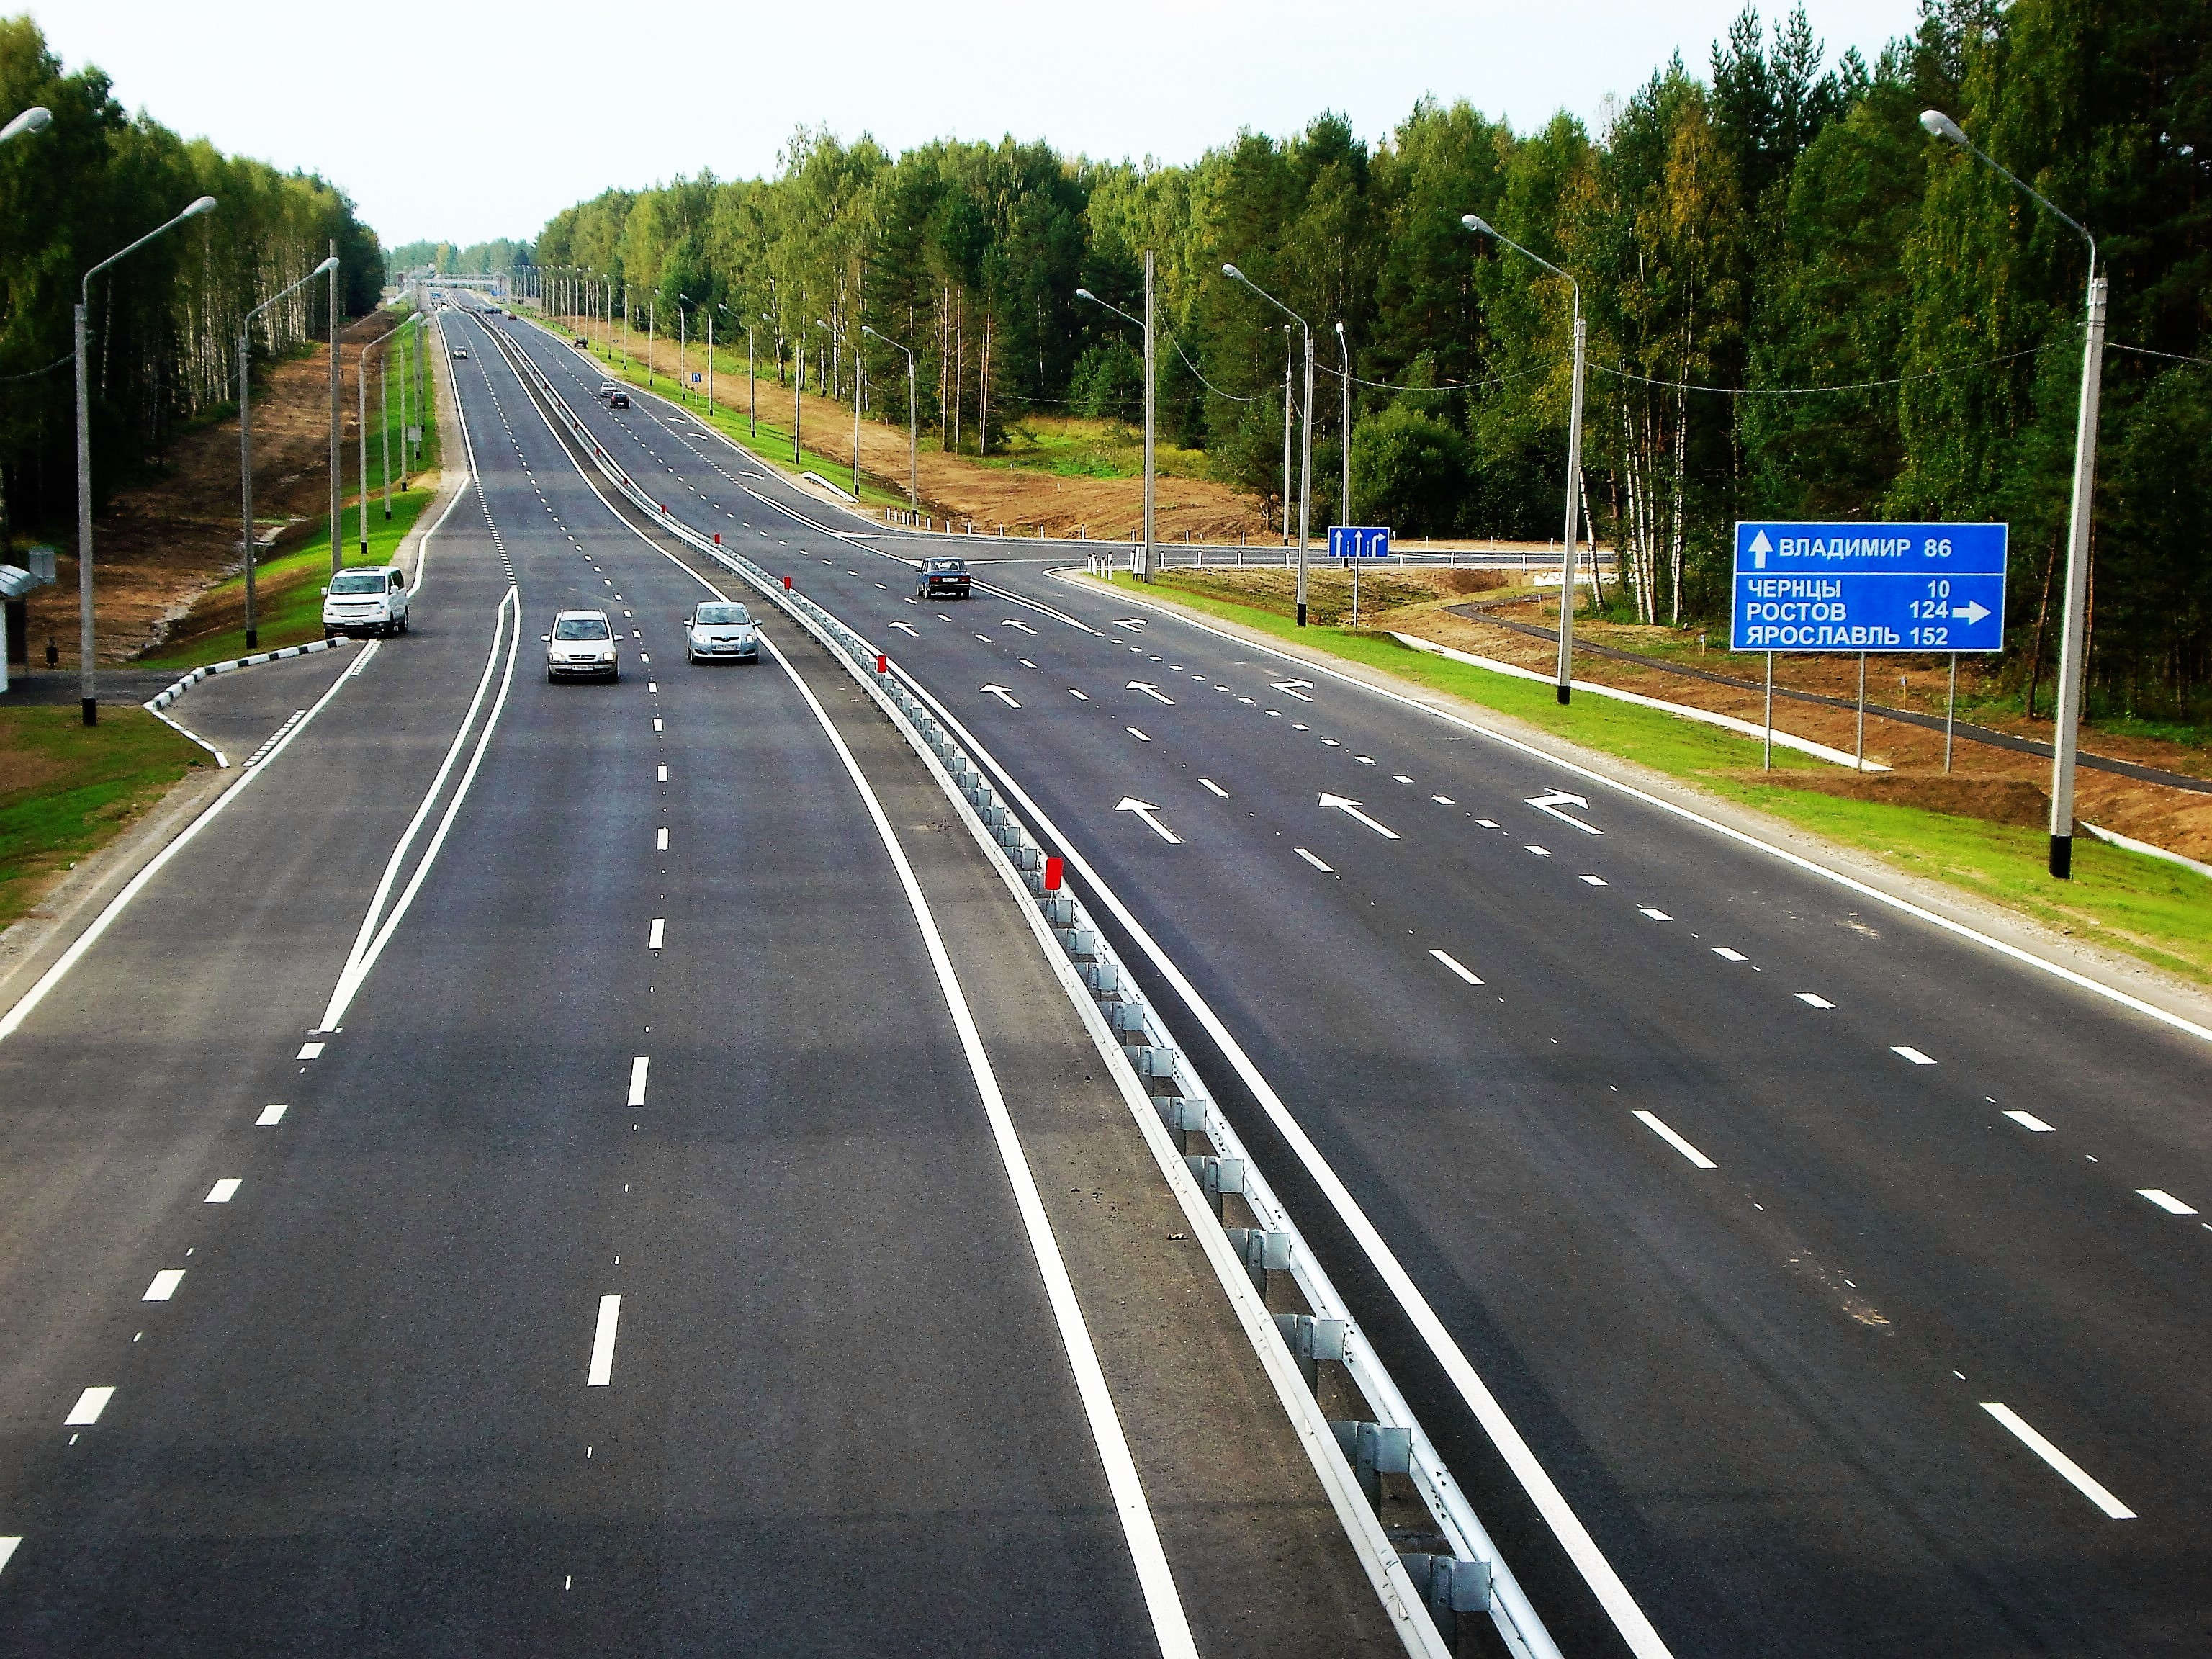 Началась разработка проекта по расширению трассы между Владимиром и Суздалем